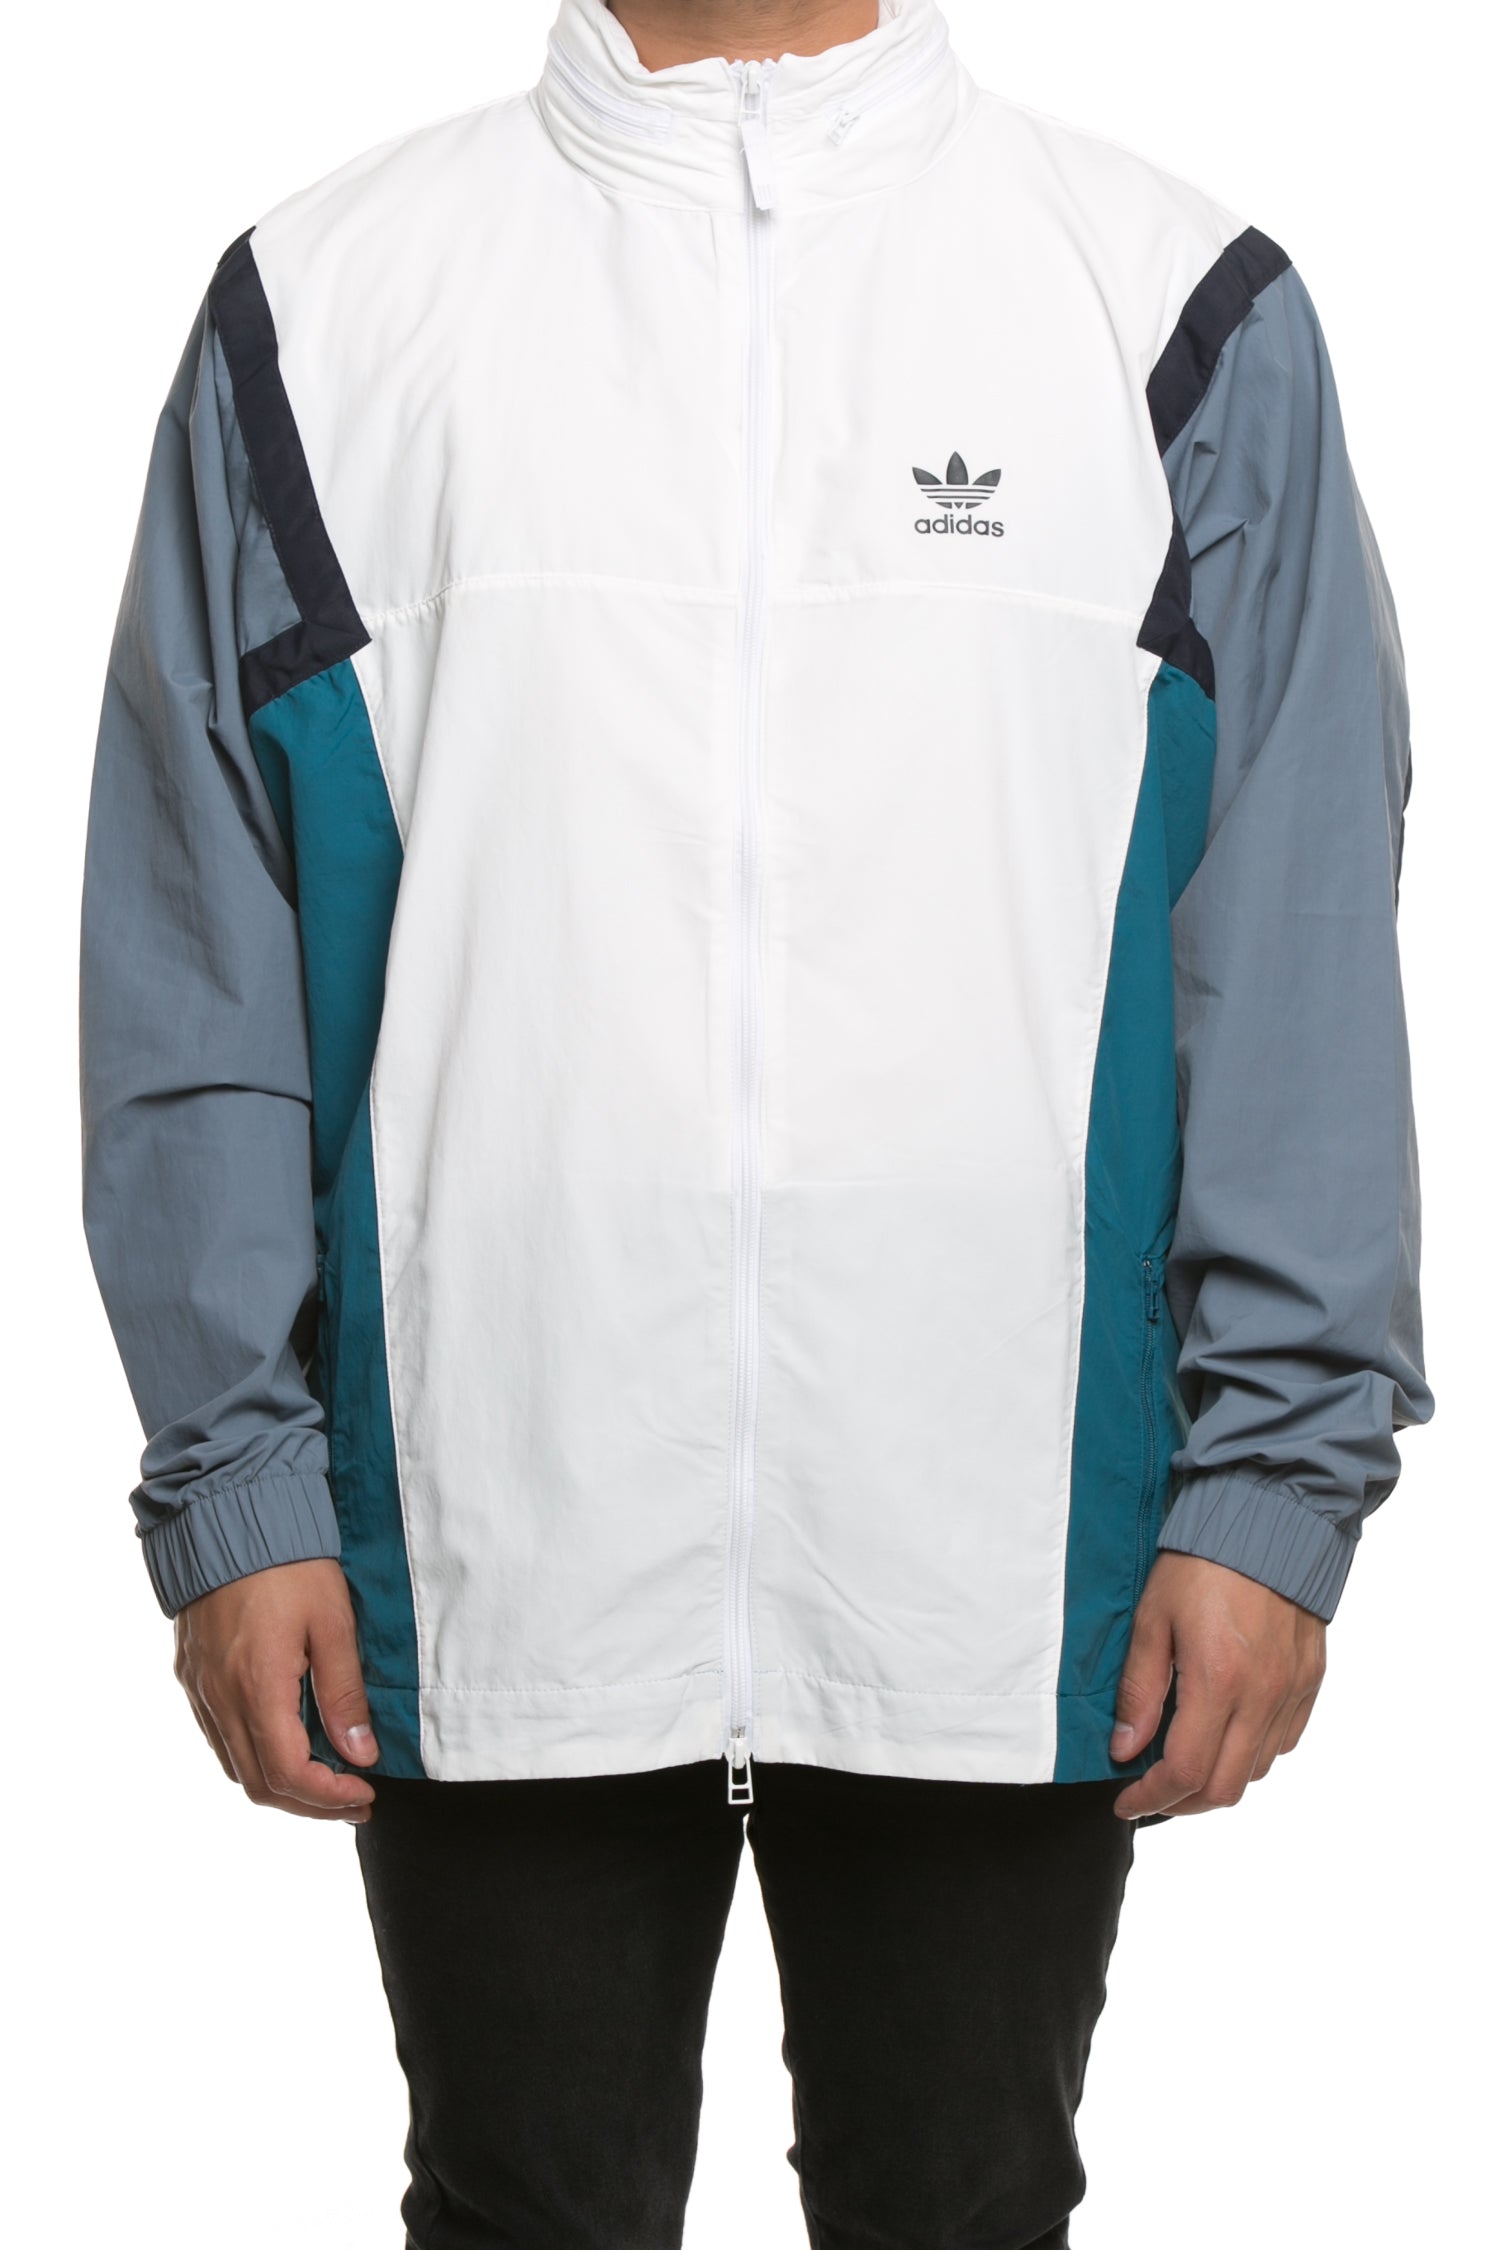 Adidas Nova Wind Jacket White/Grey/Blue 